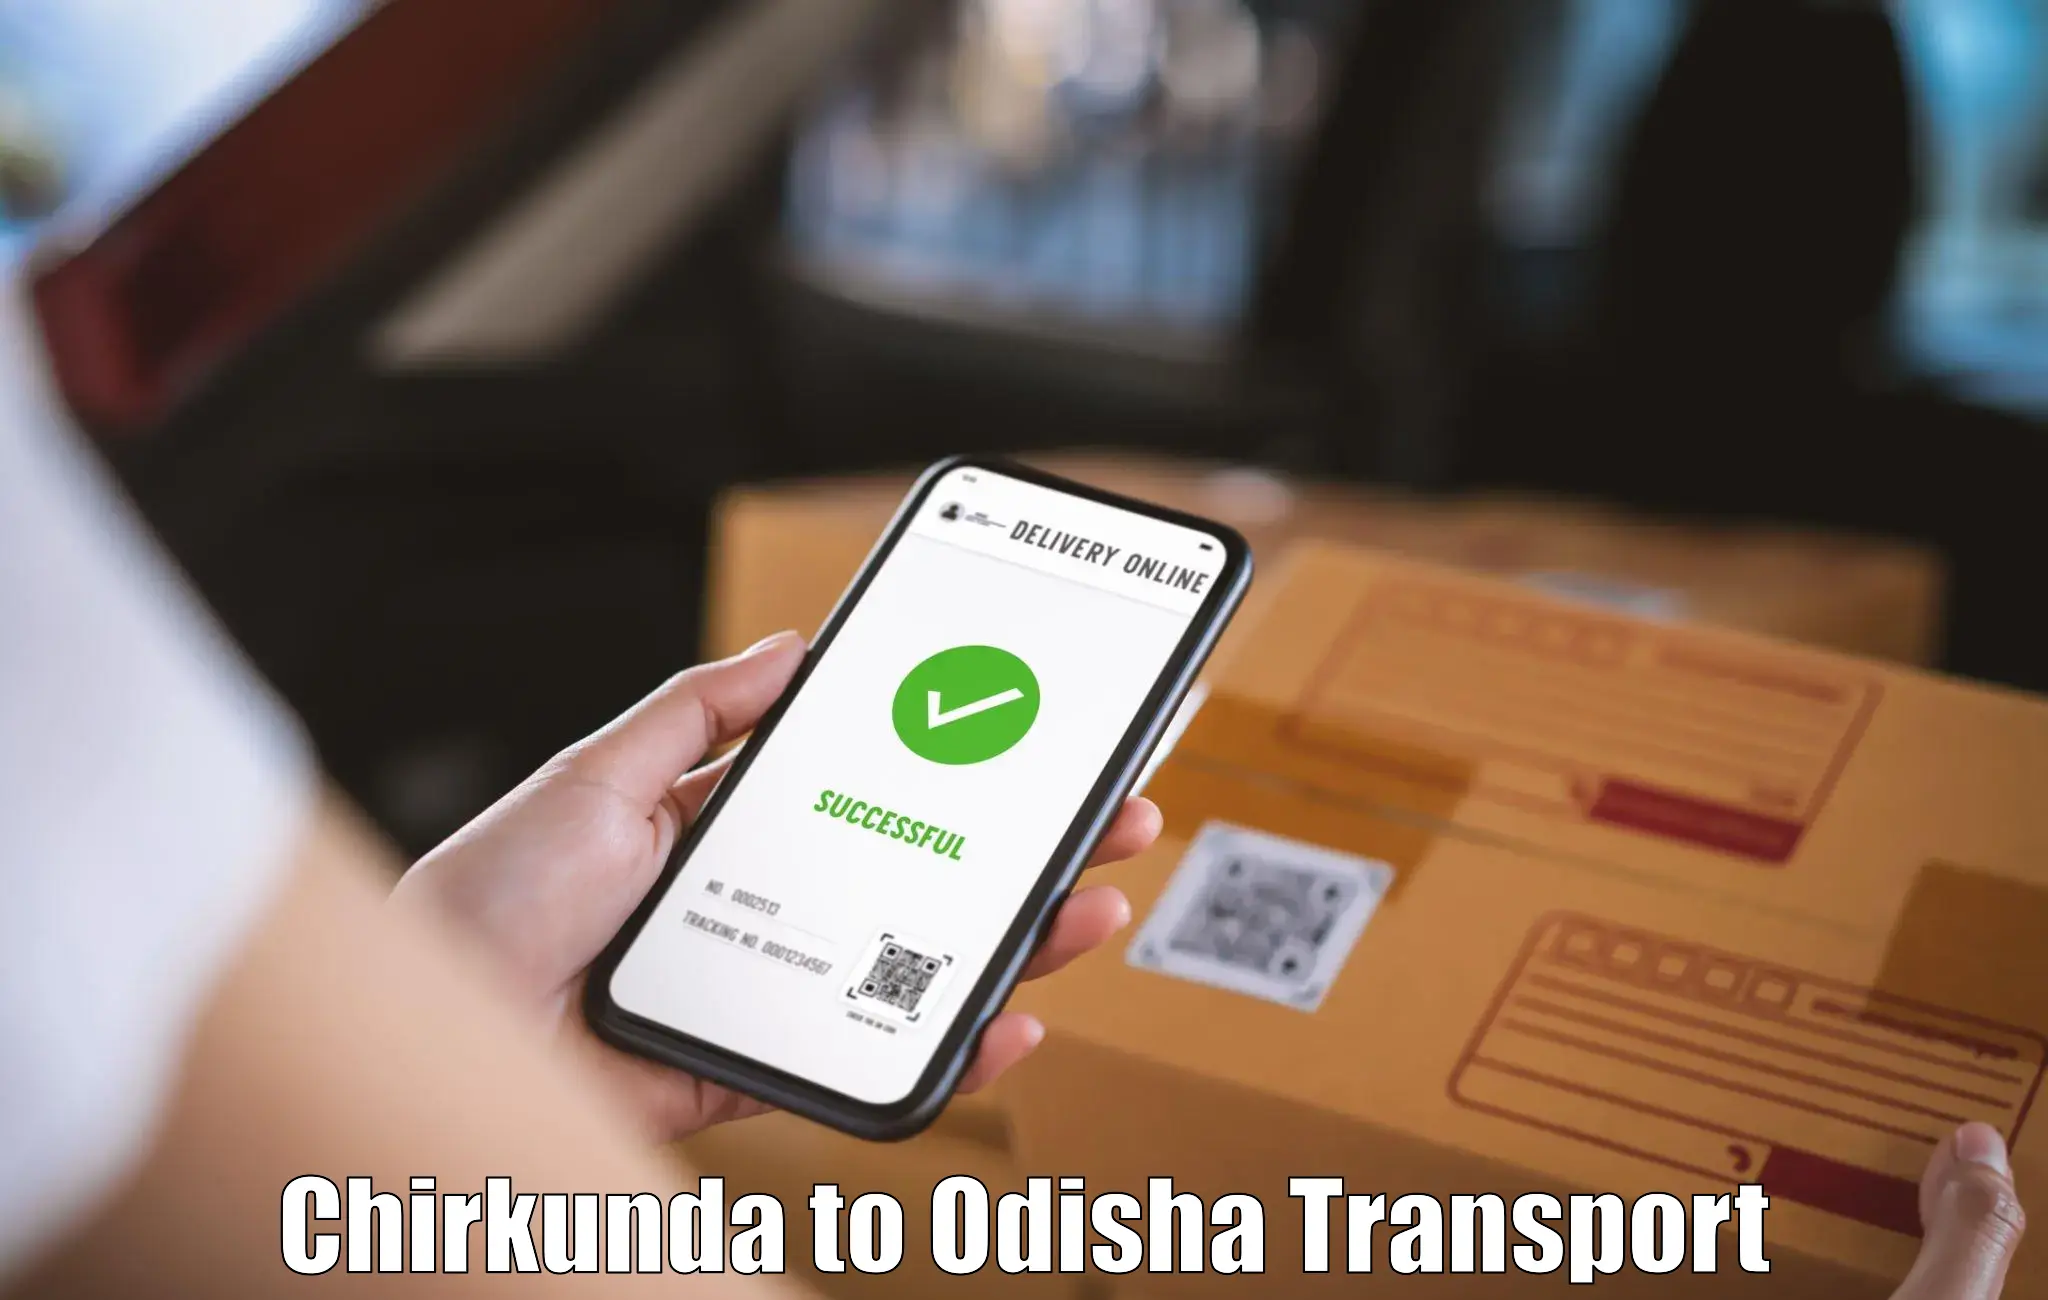 Transportation solution services Chirkunda to Keonjhar